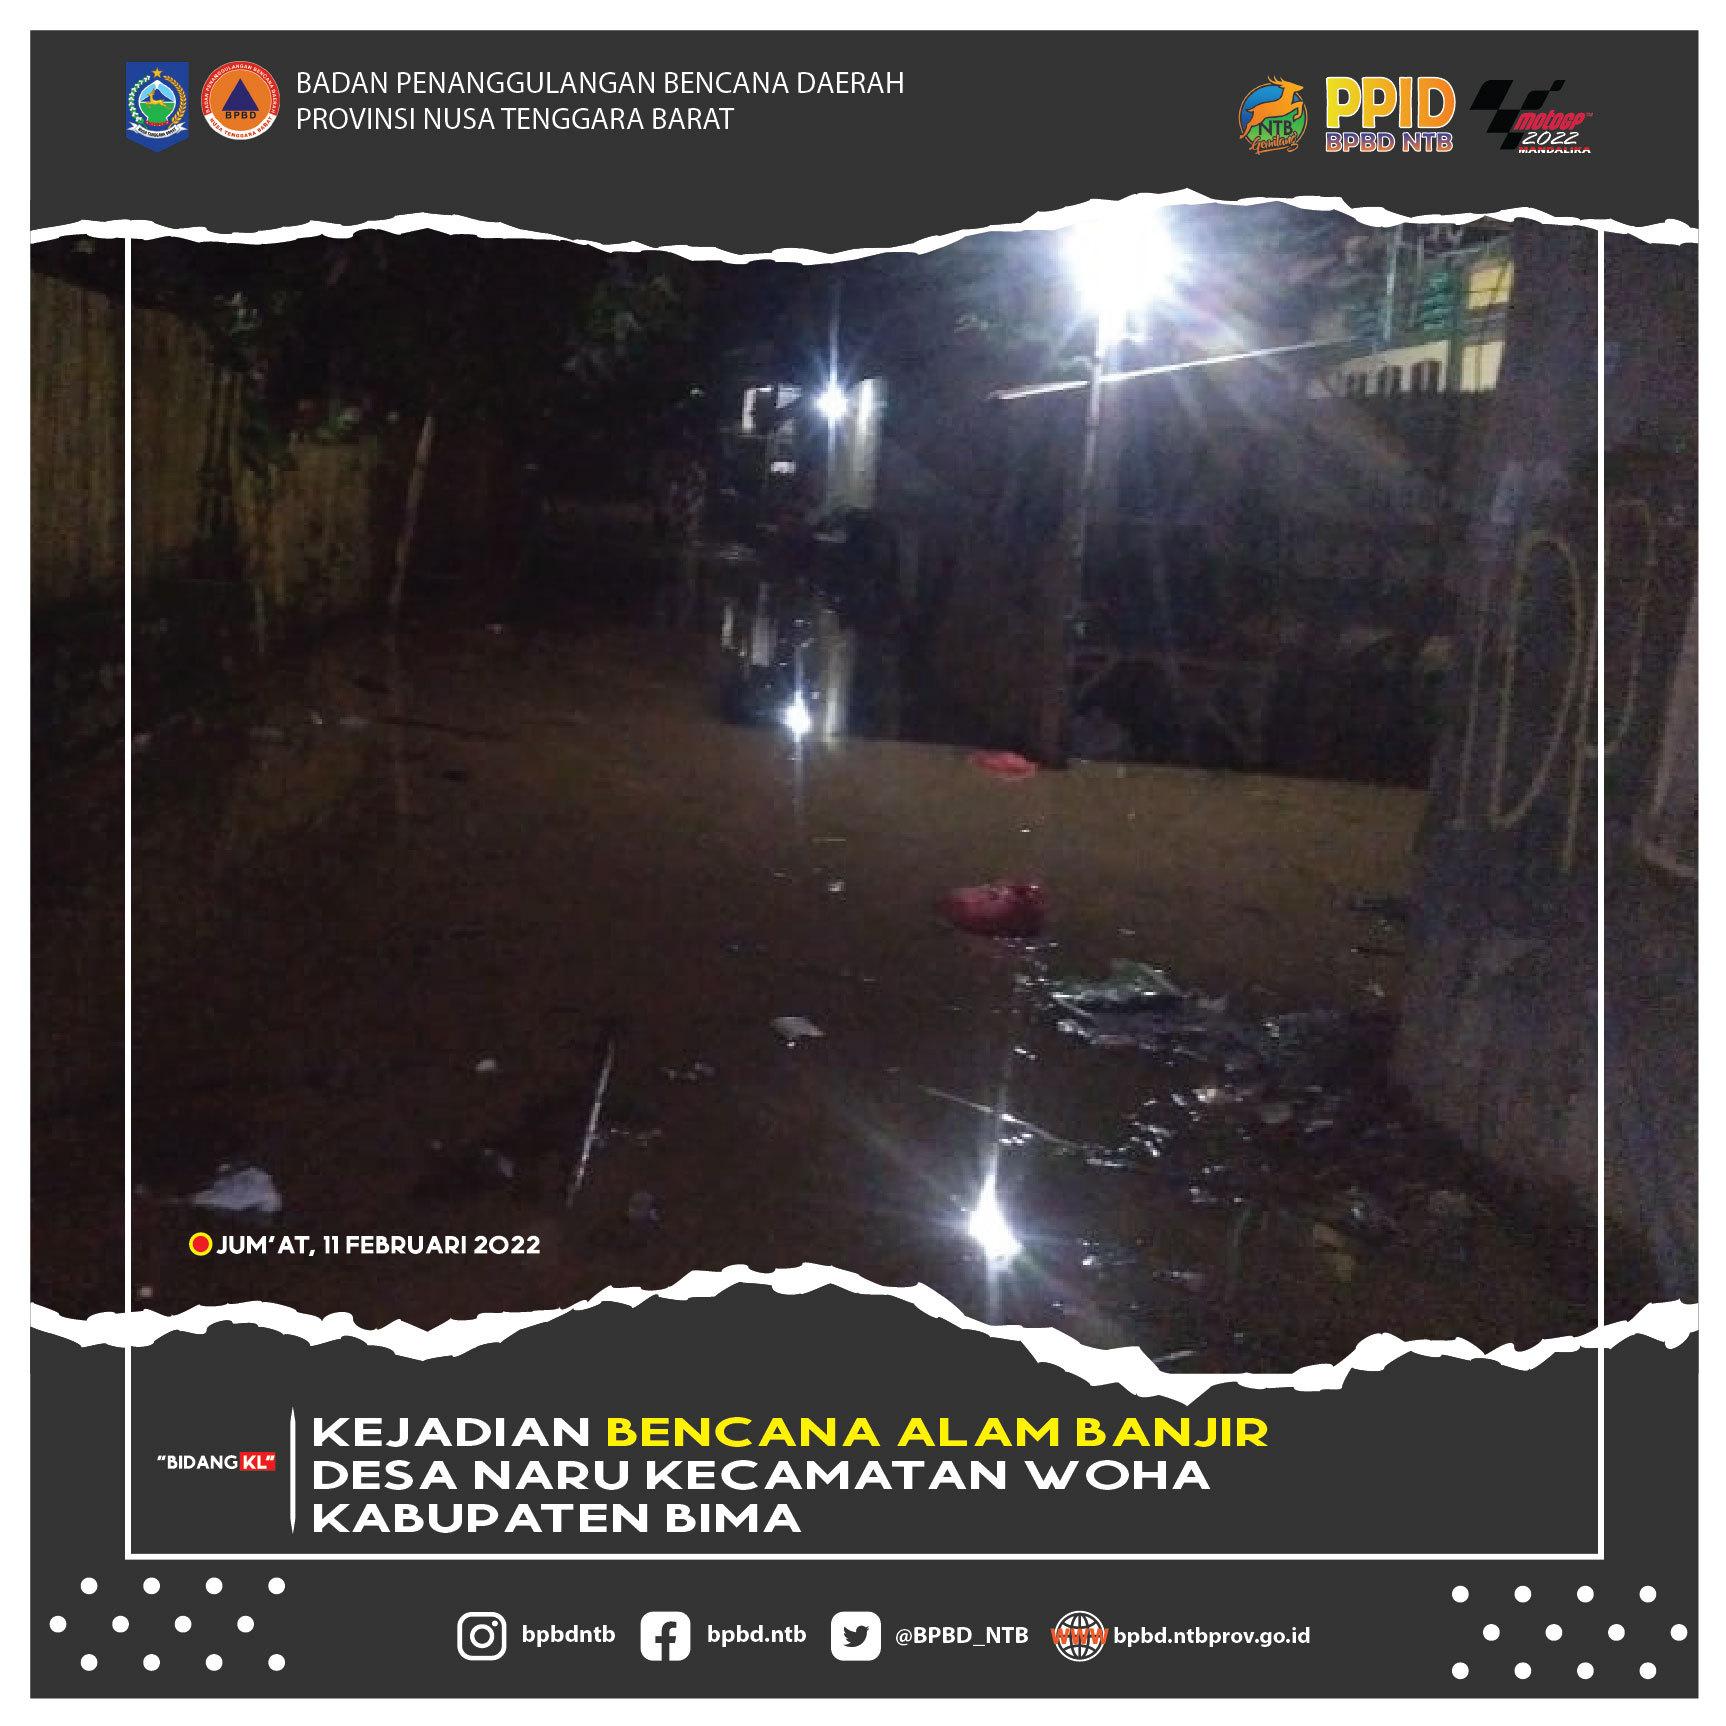 Kejadian Bencana Alam Banjir Desa Naru Kecamatan Woha Kabupaten Bima (Jum'at, 11 Februari 2022)